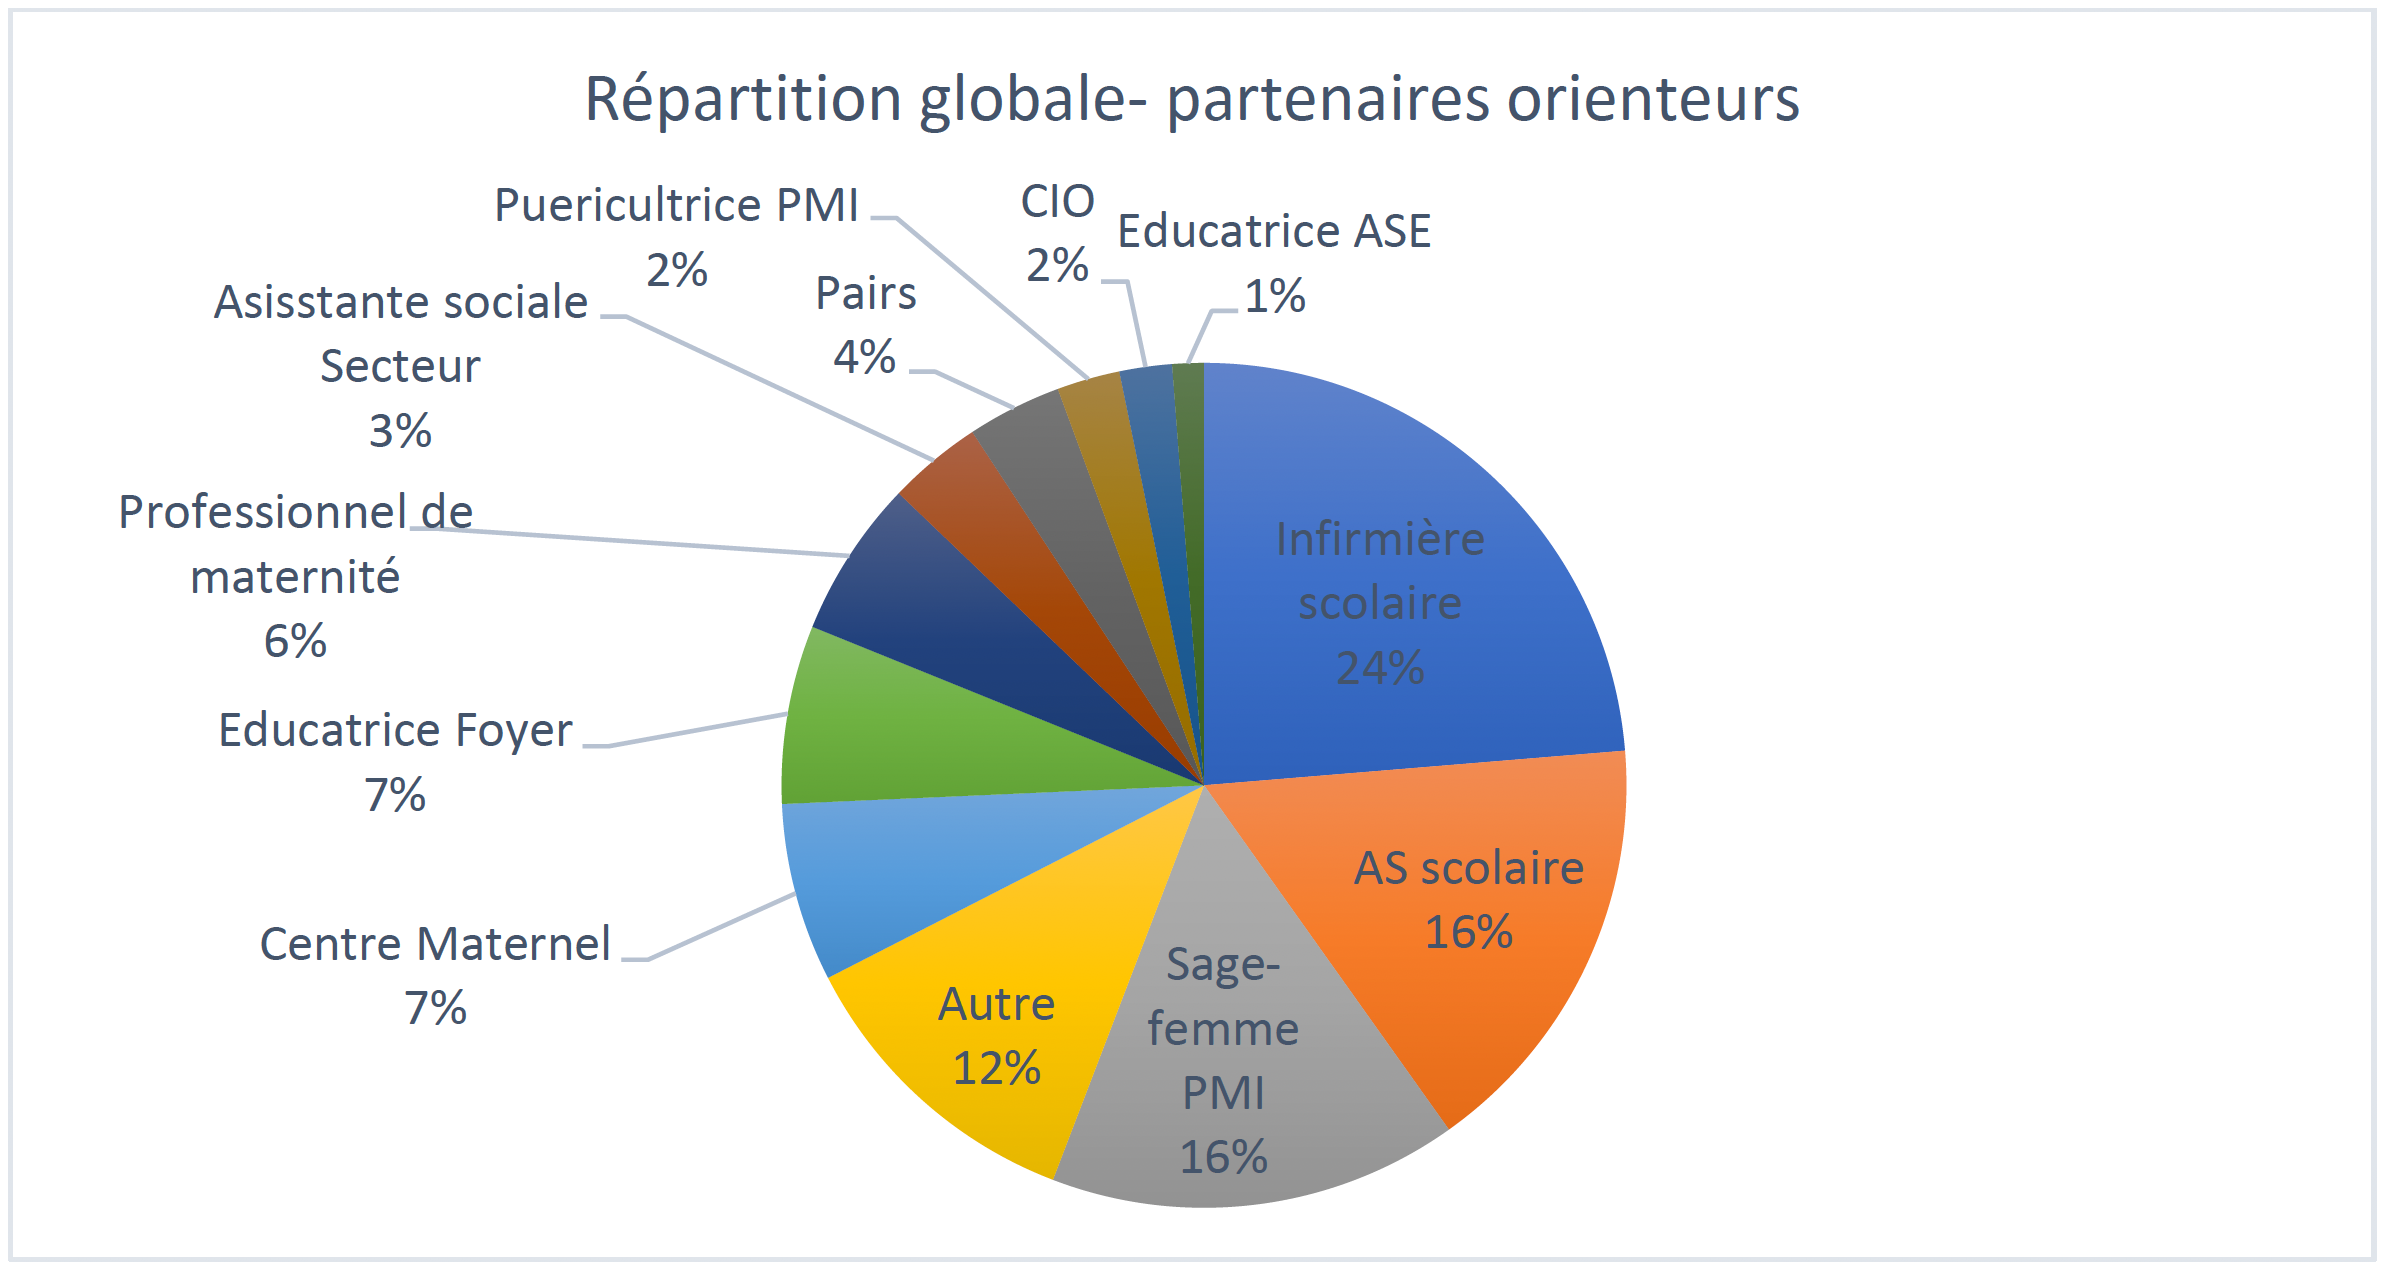 Image / Répartition globale partenaires orienteurs